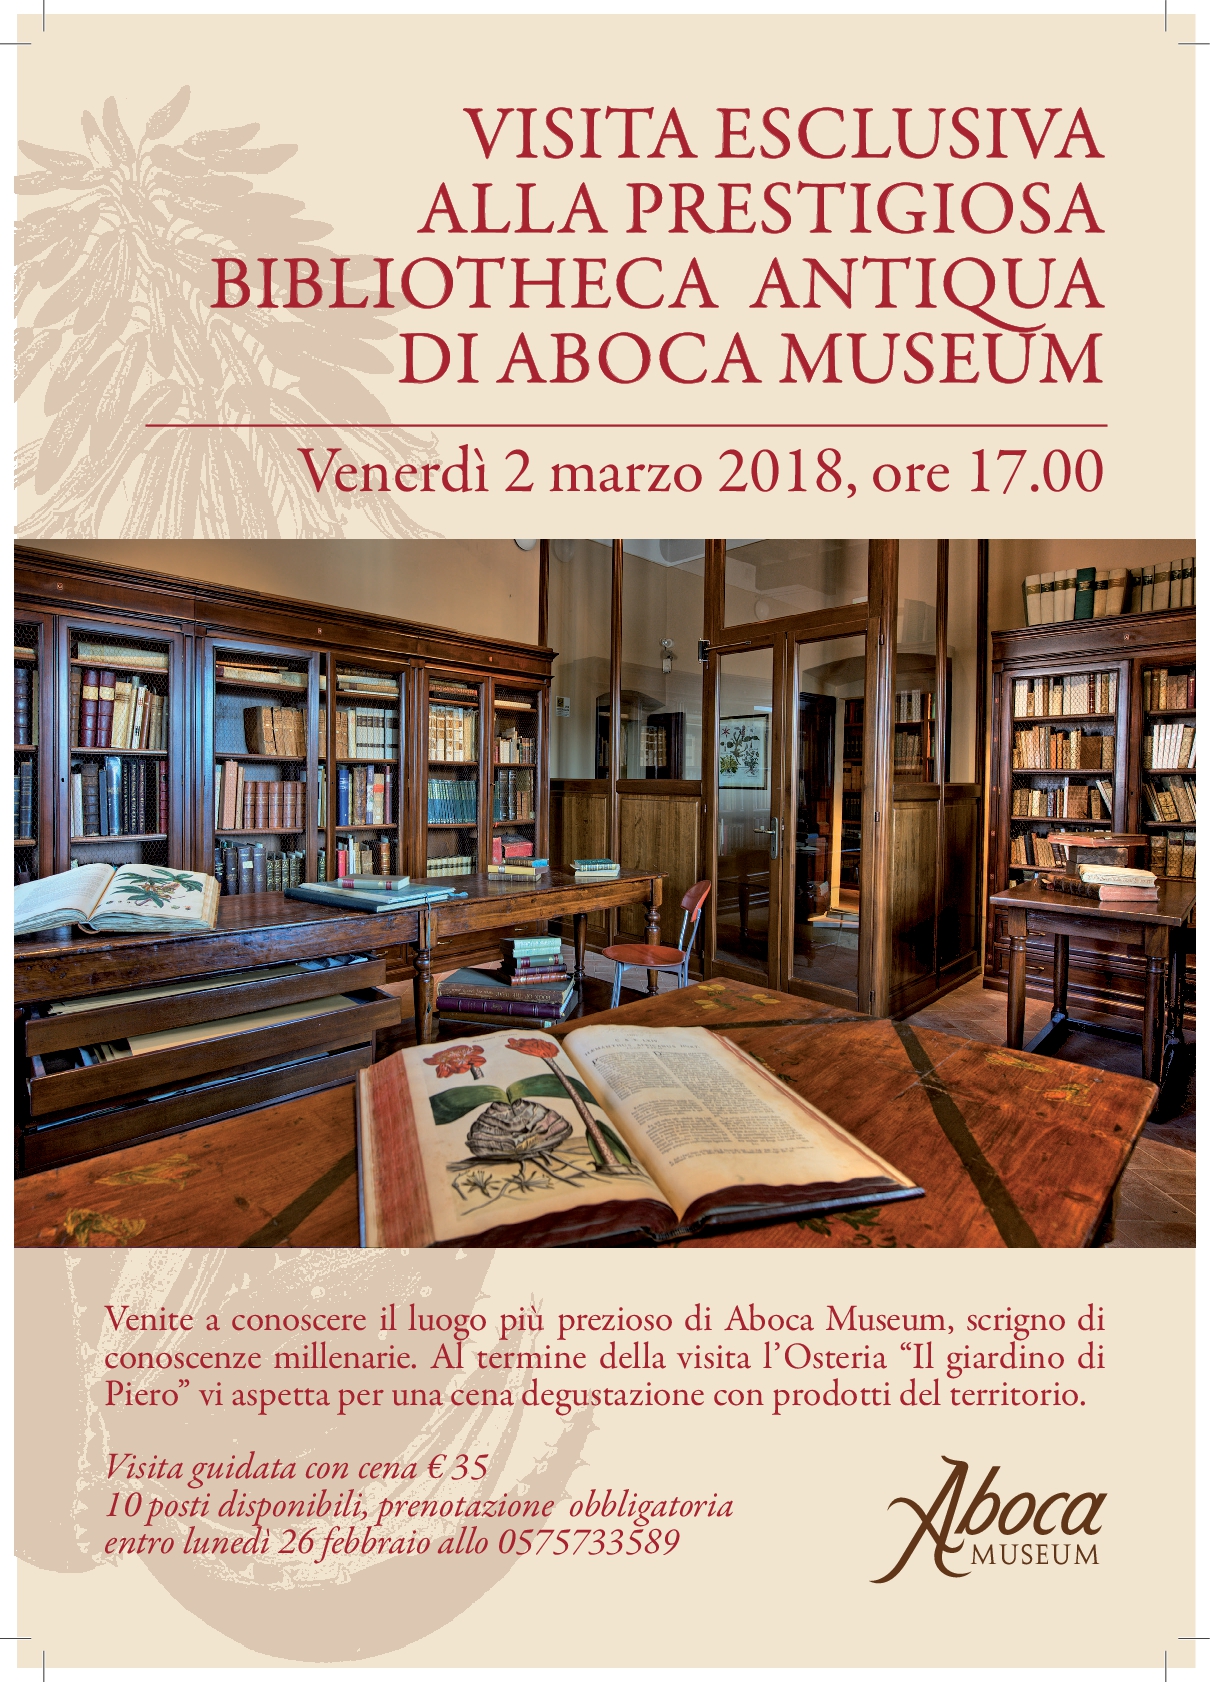 Visita Bibliotheca Antiqua